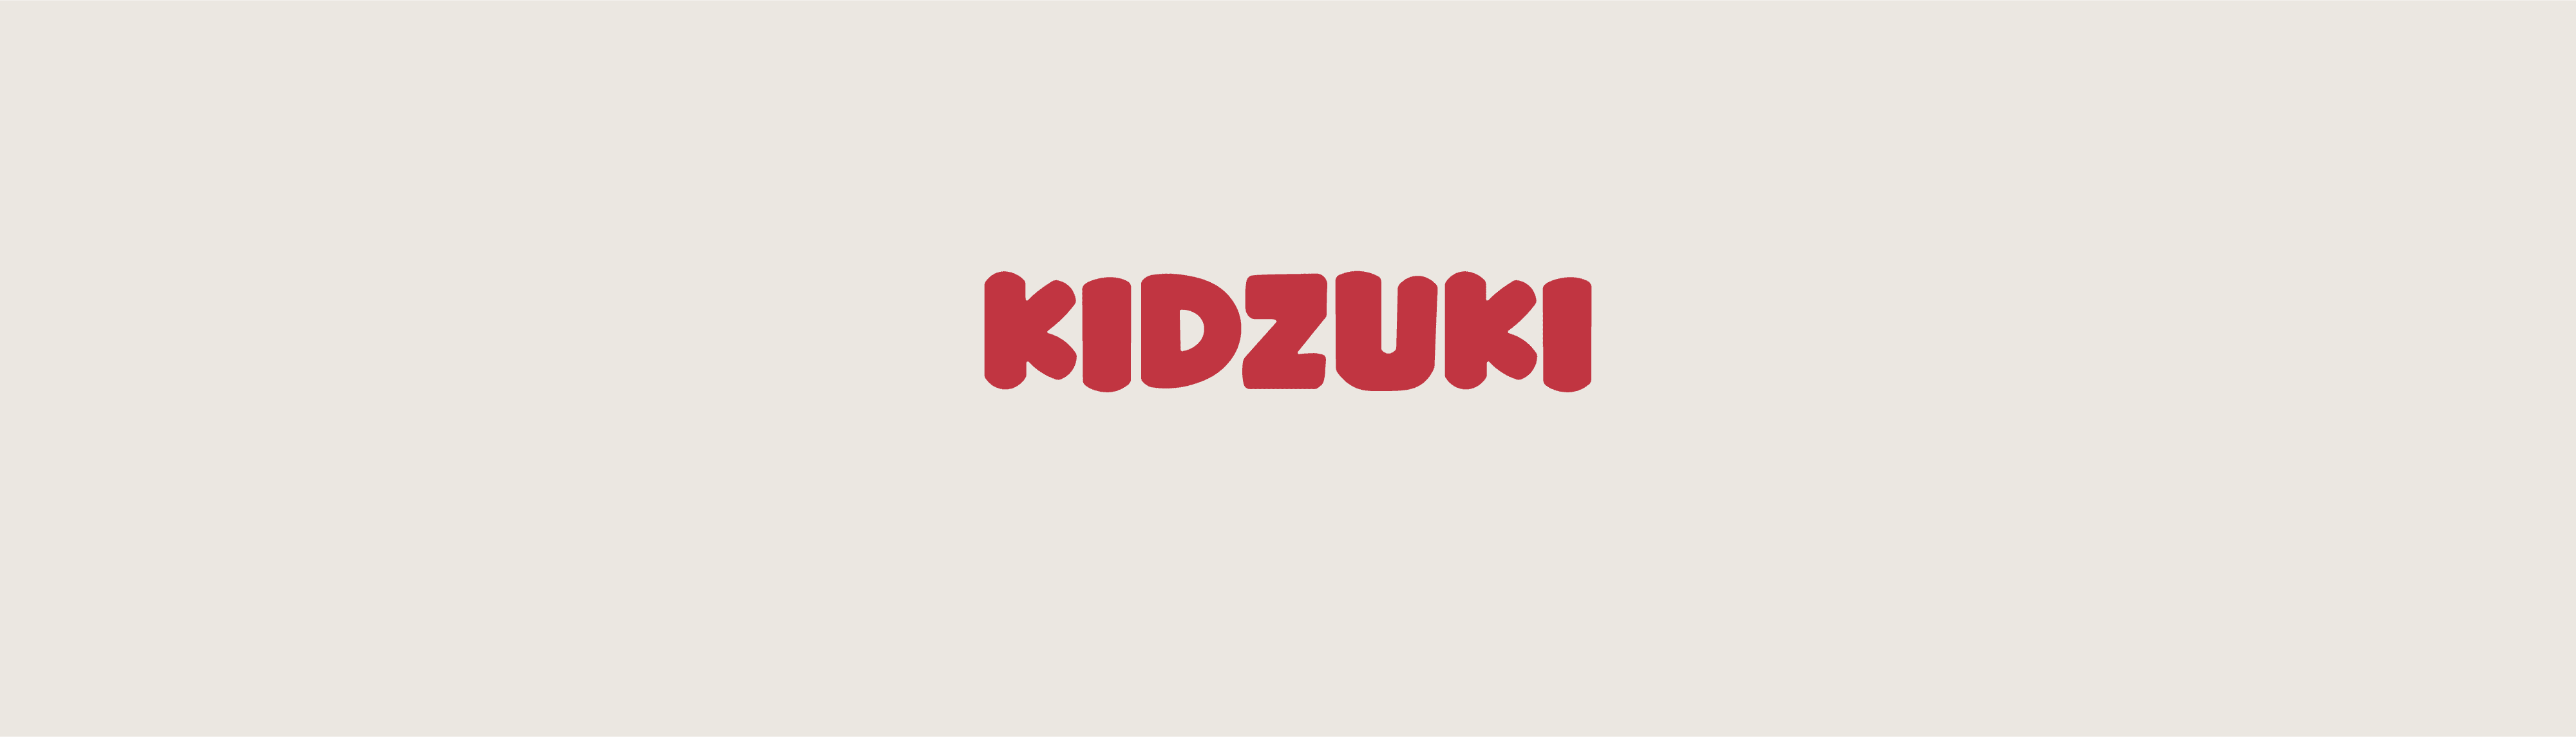 TeamKidzuki banner